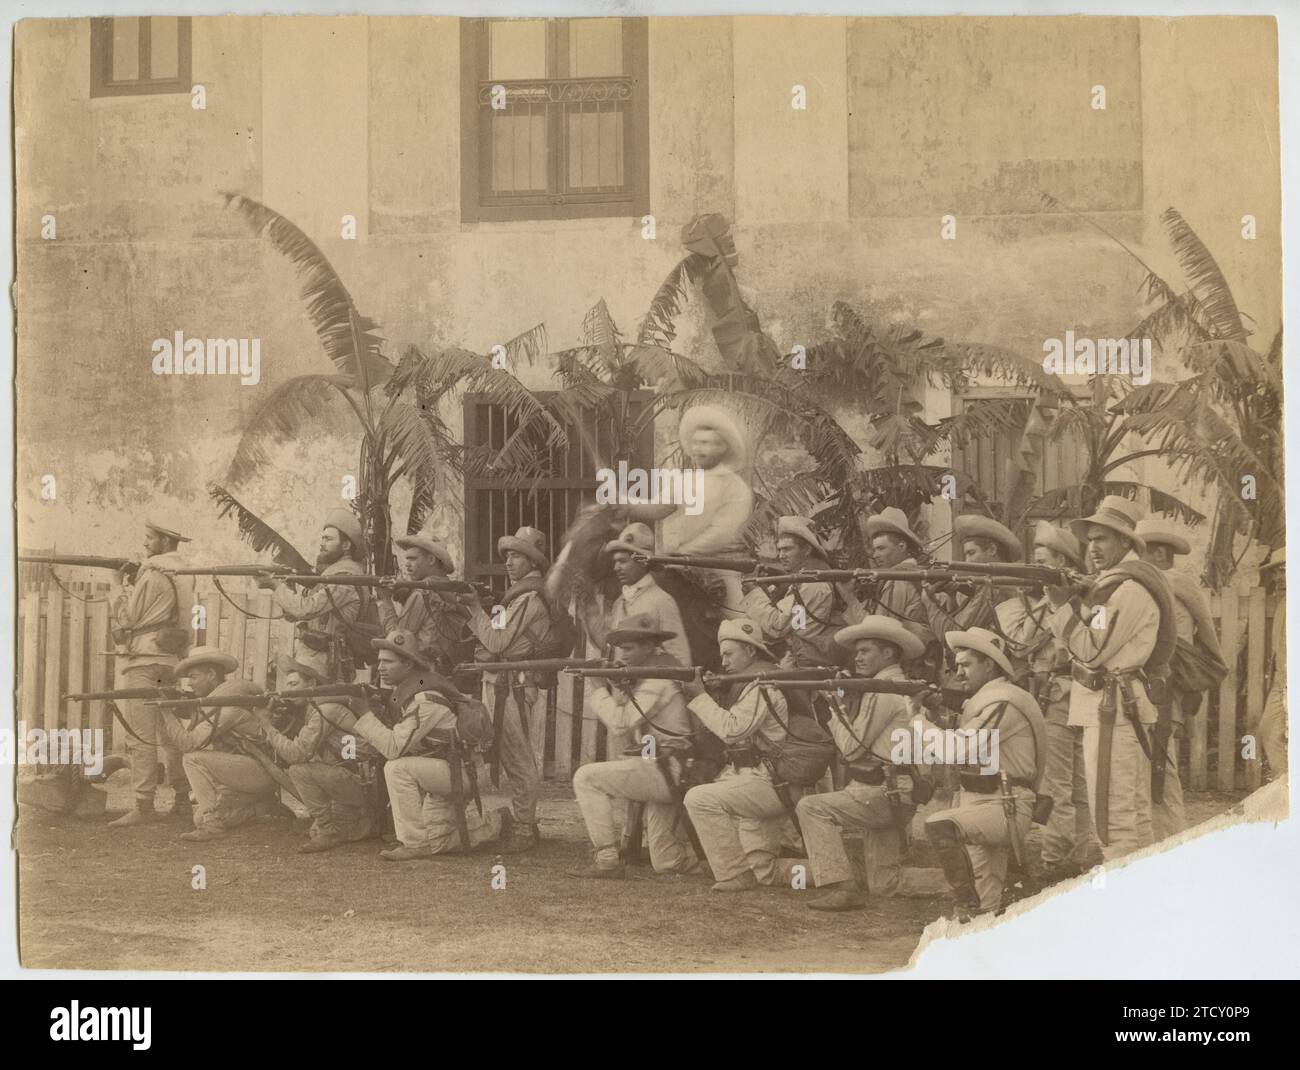 Kuba, Juni 1896. Kubanischer Krieg. Ein Infanterieoffizier führt seinen Zug an. Quelle: Album/Archivo ABC Stockfoto